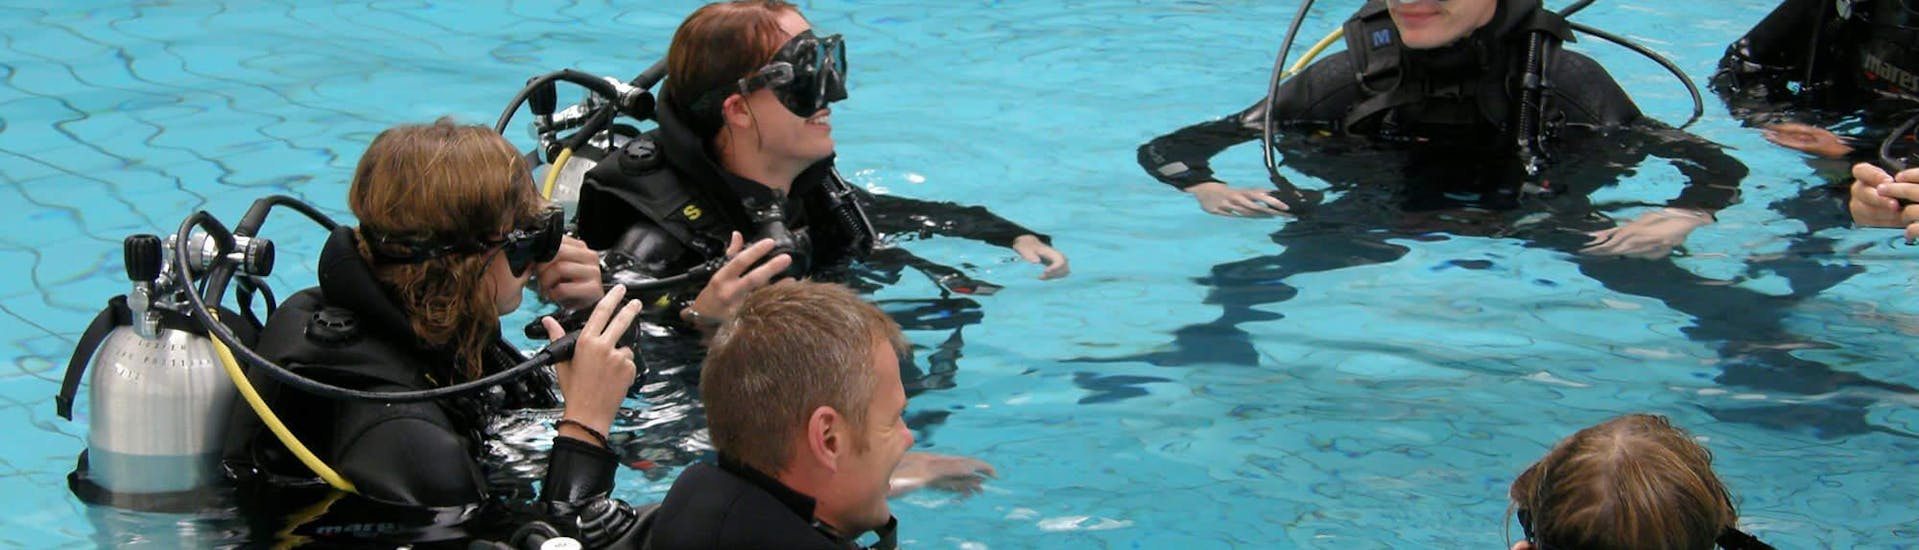 Corso di immersione (SSI) a Draga di Moschiena per principianti.